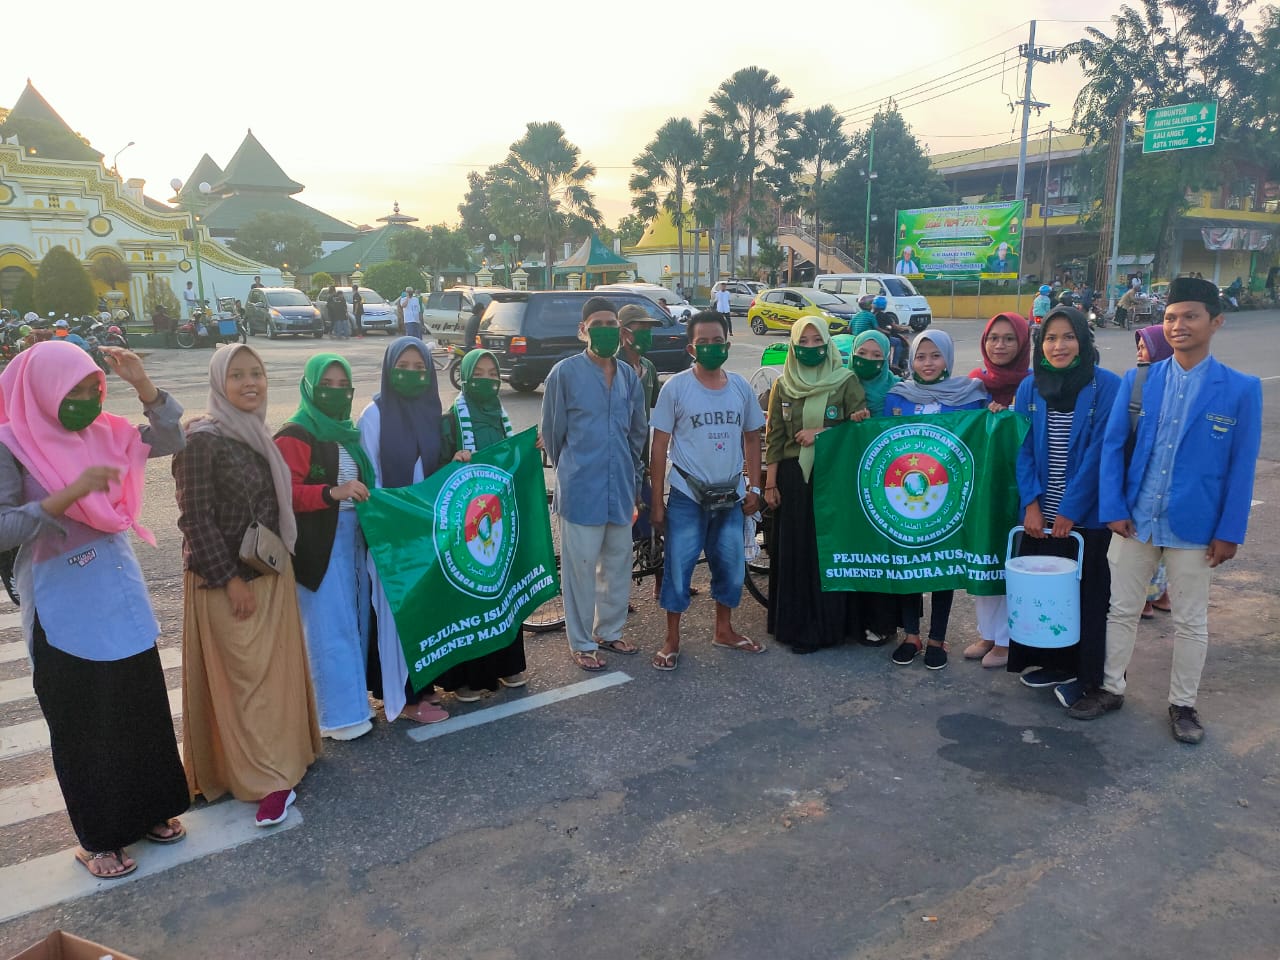 Pejuang Islam Nusantara Sumenep bersama PMII dan Banser, Bagikan Takjil dan Masker